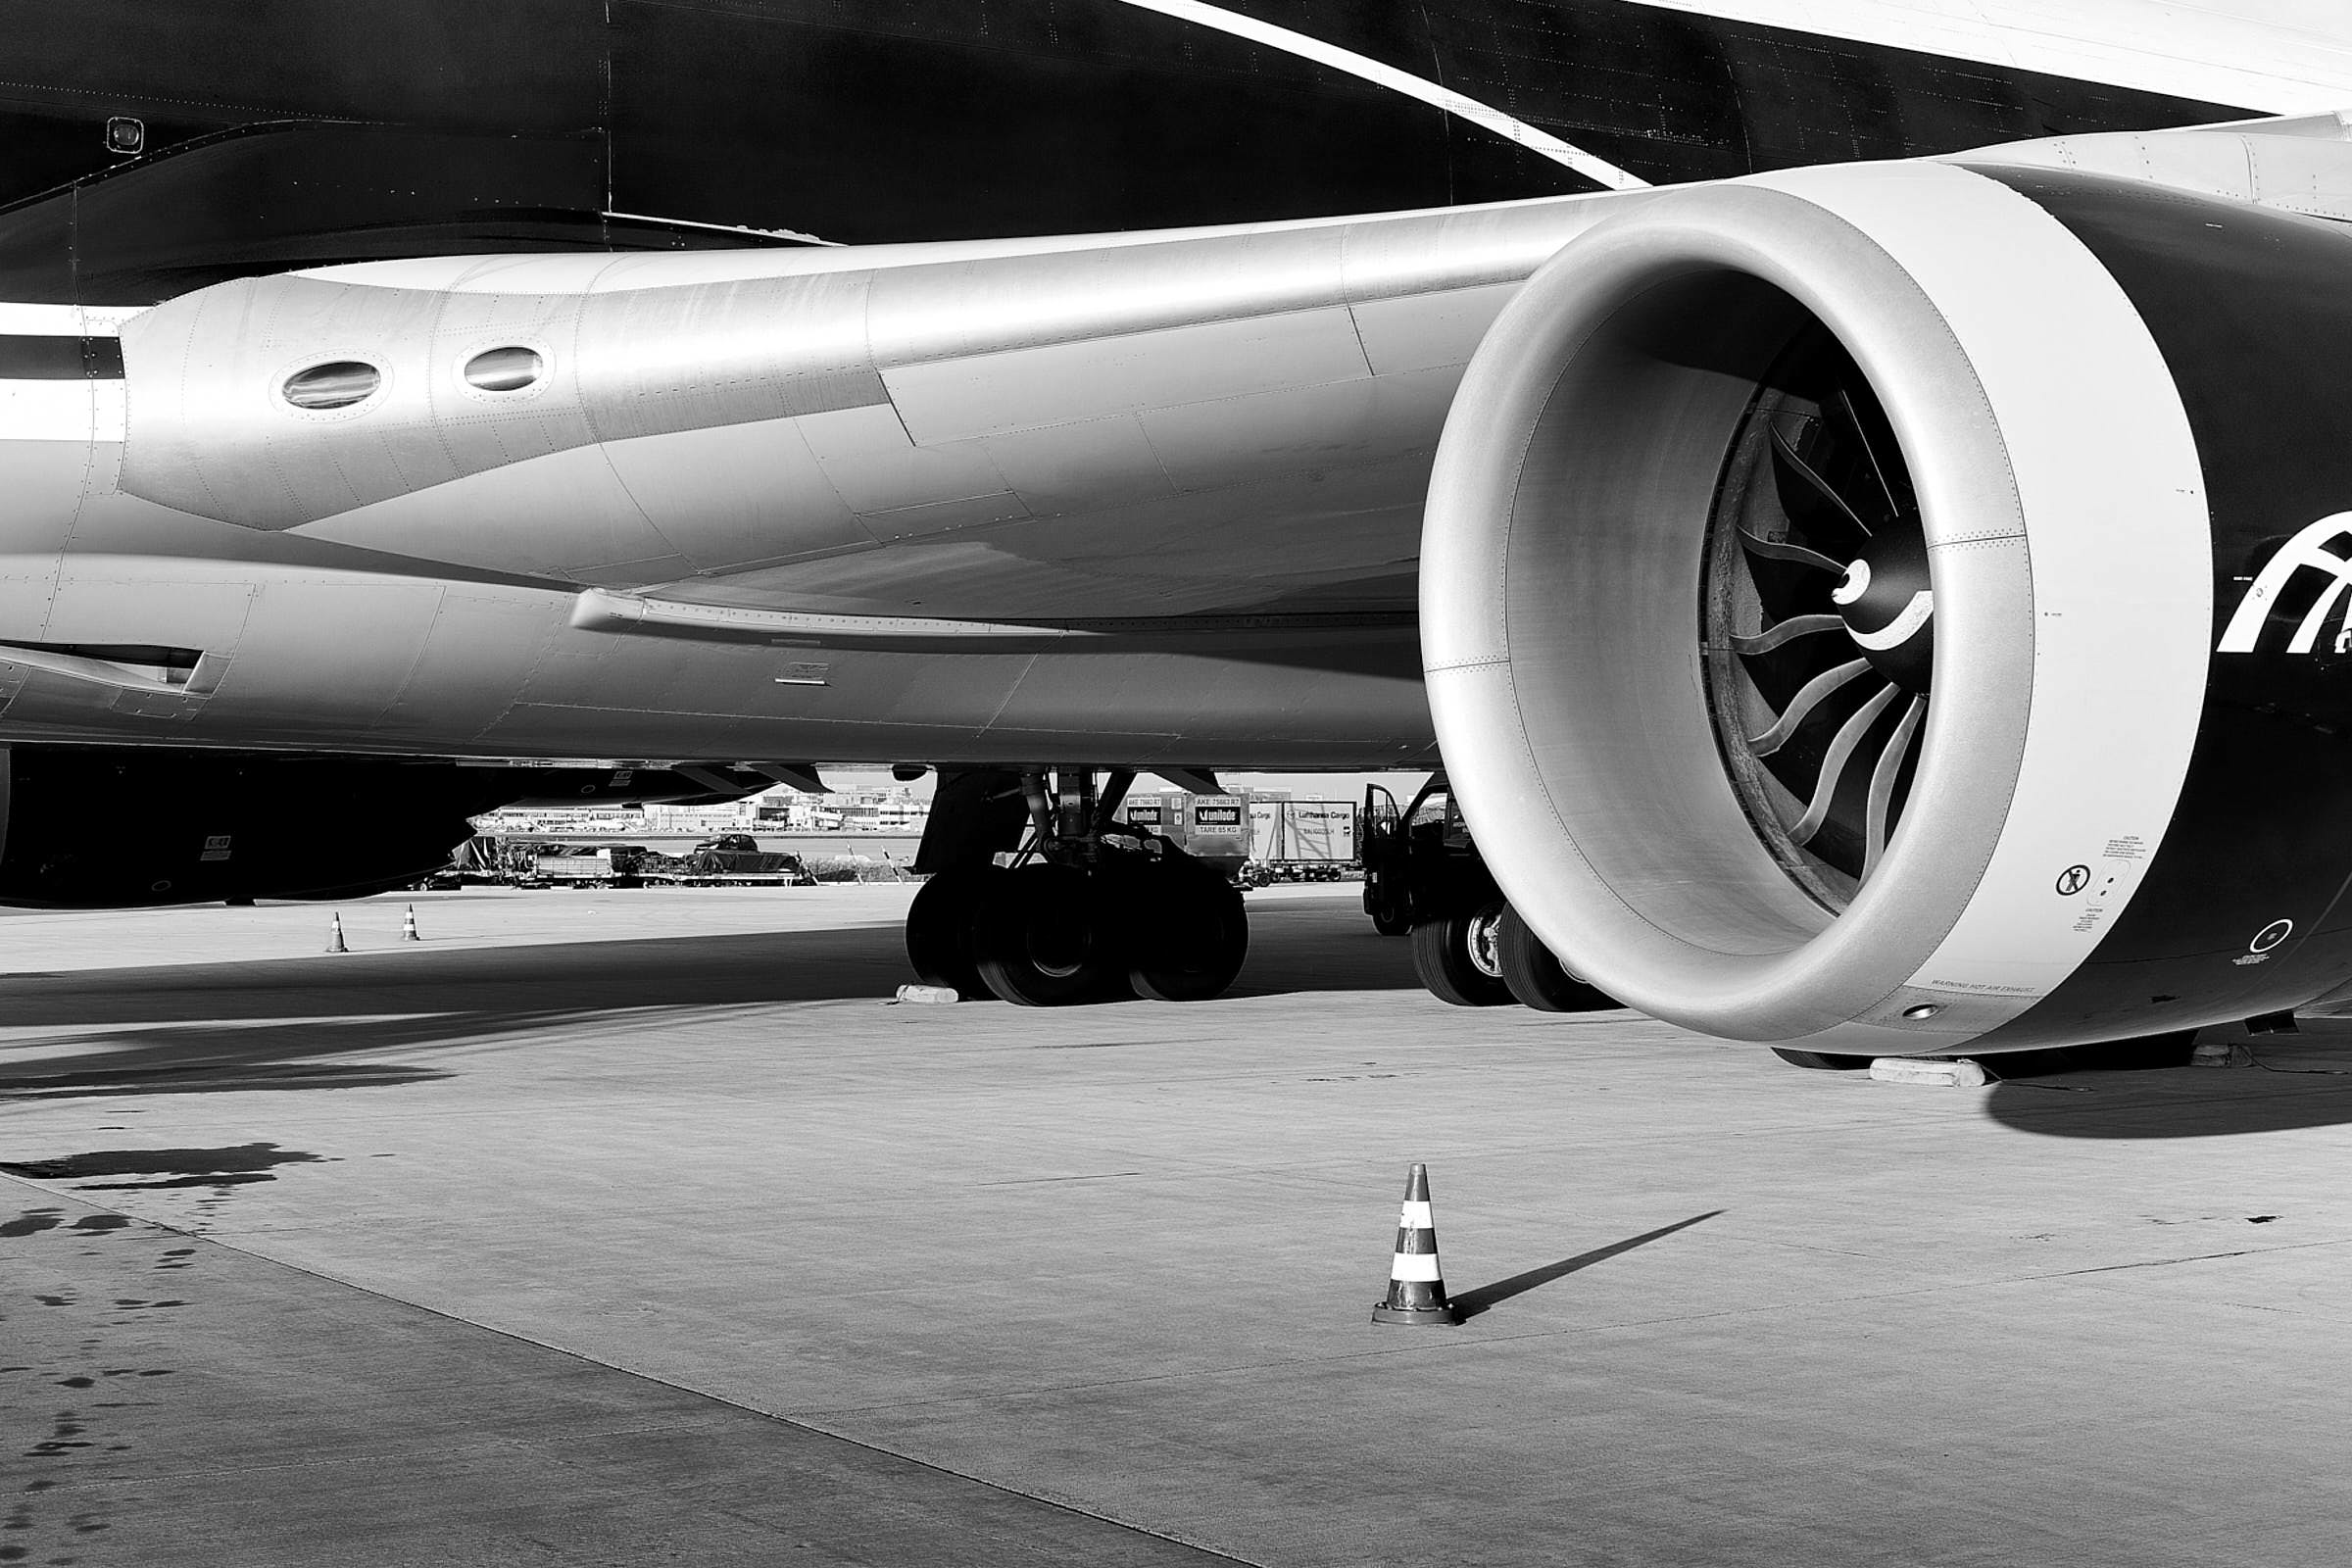 flugzeug-fluegel-mit-turbine-auf-vorfeld-schwarz-weiß